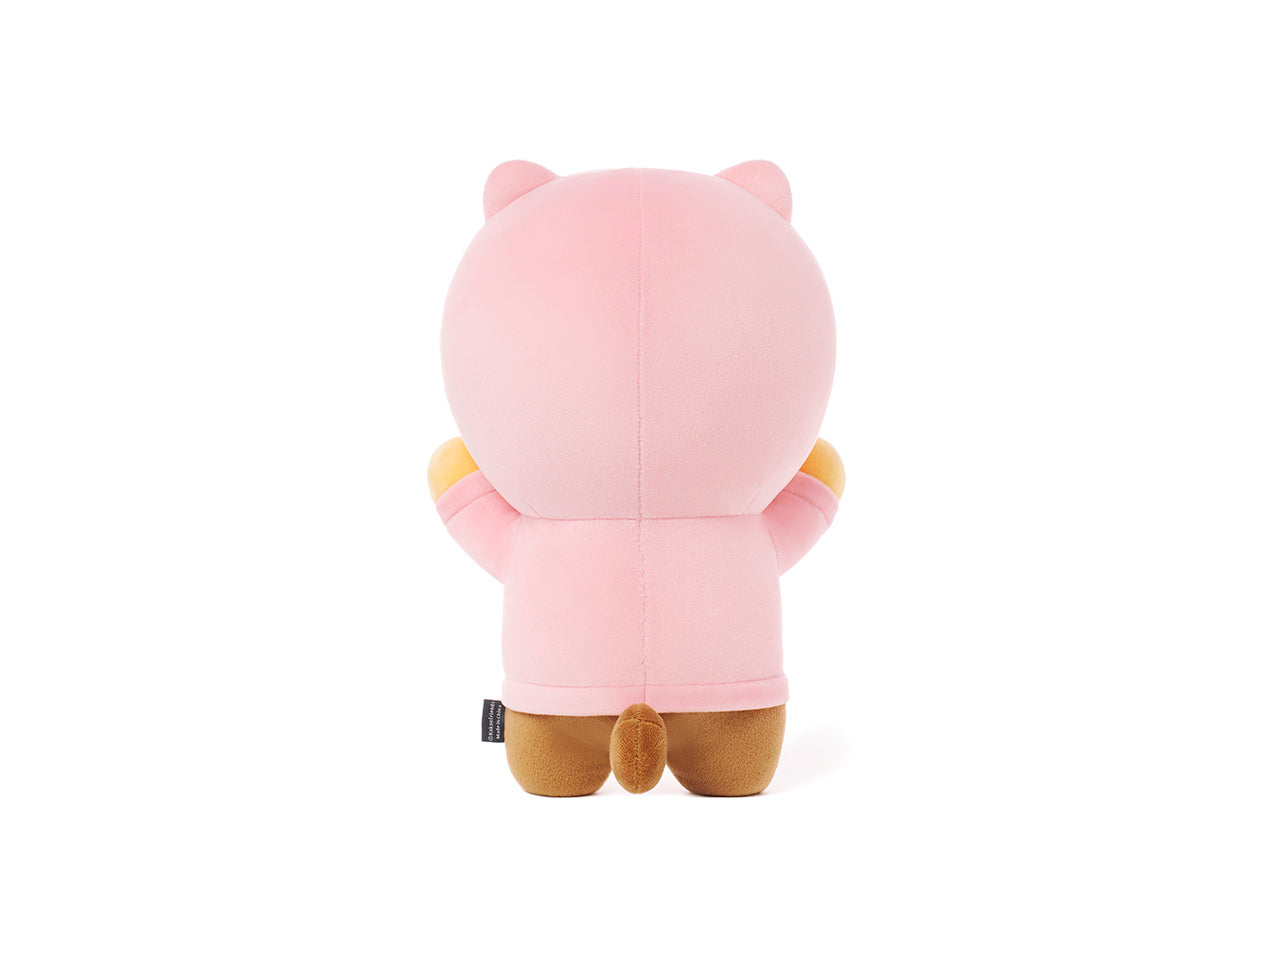 kakao friends choonsik in pink hoodie plush toy back